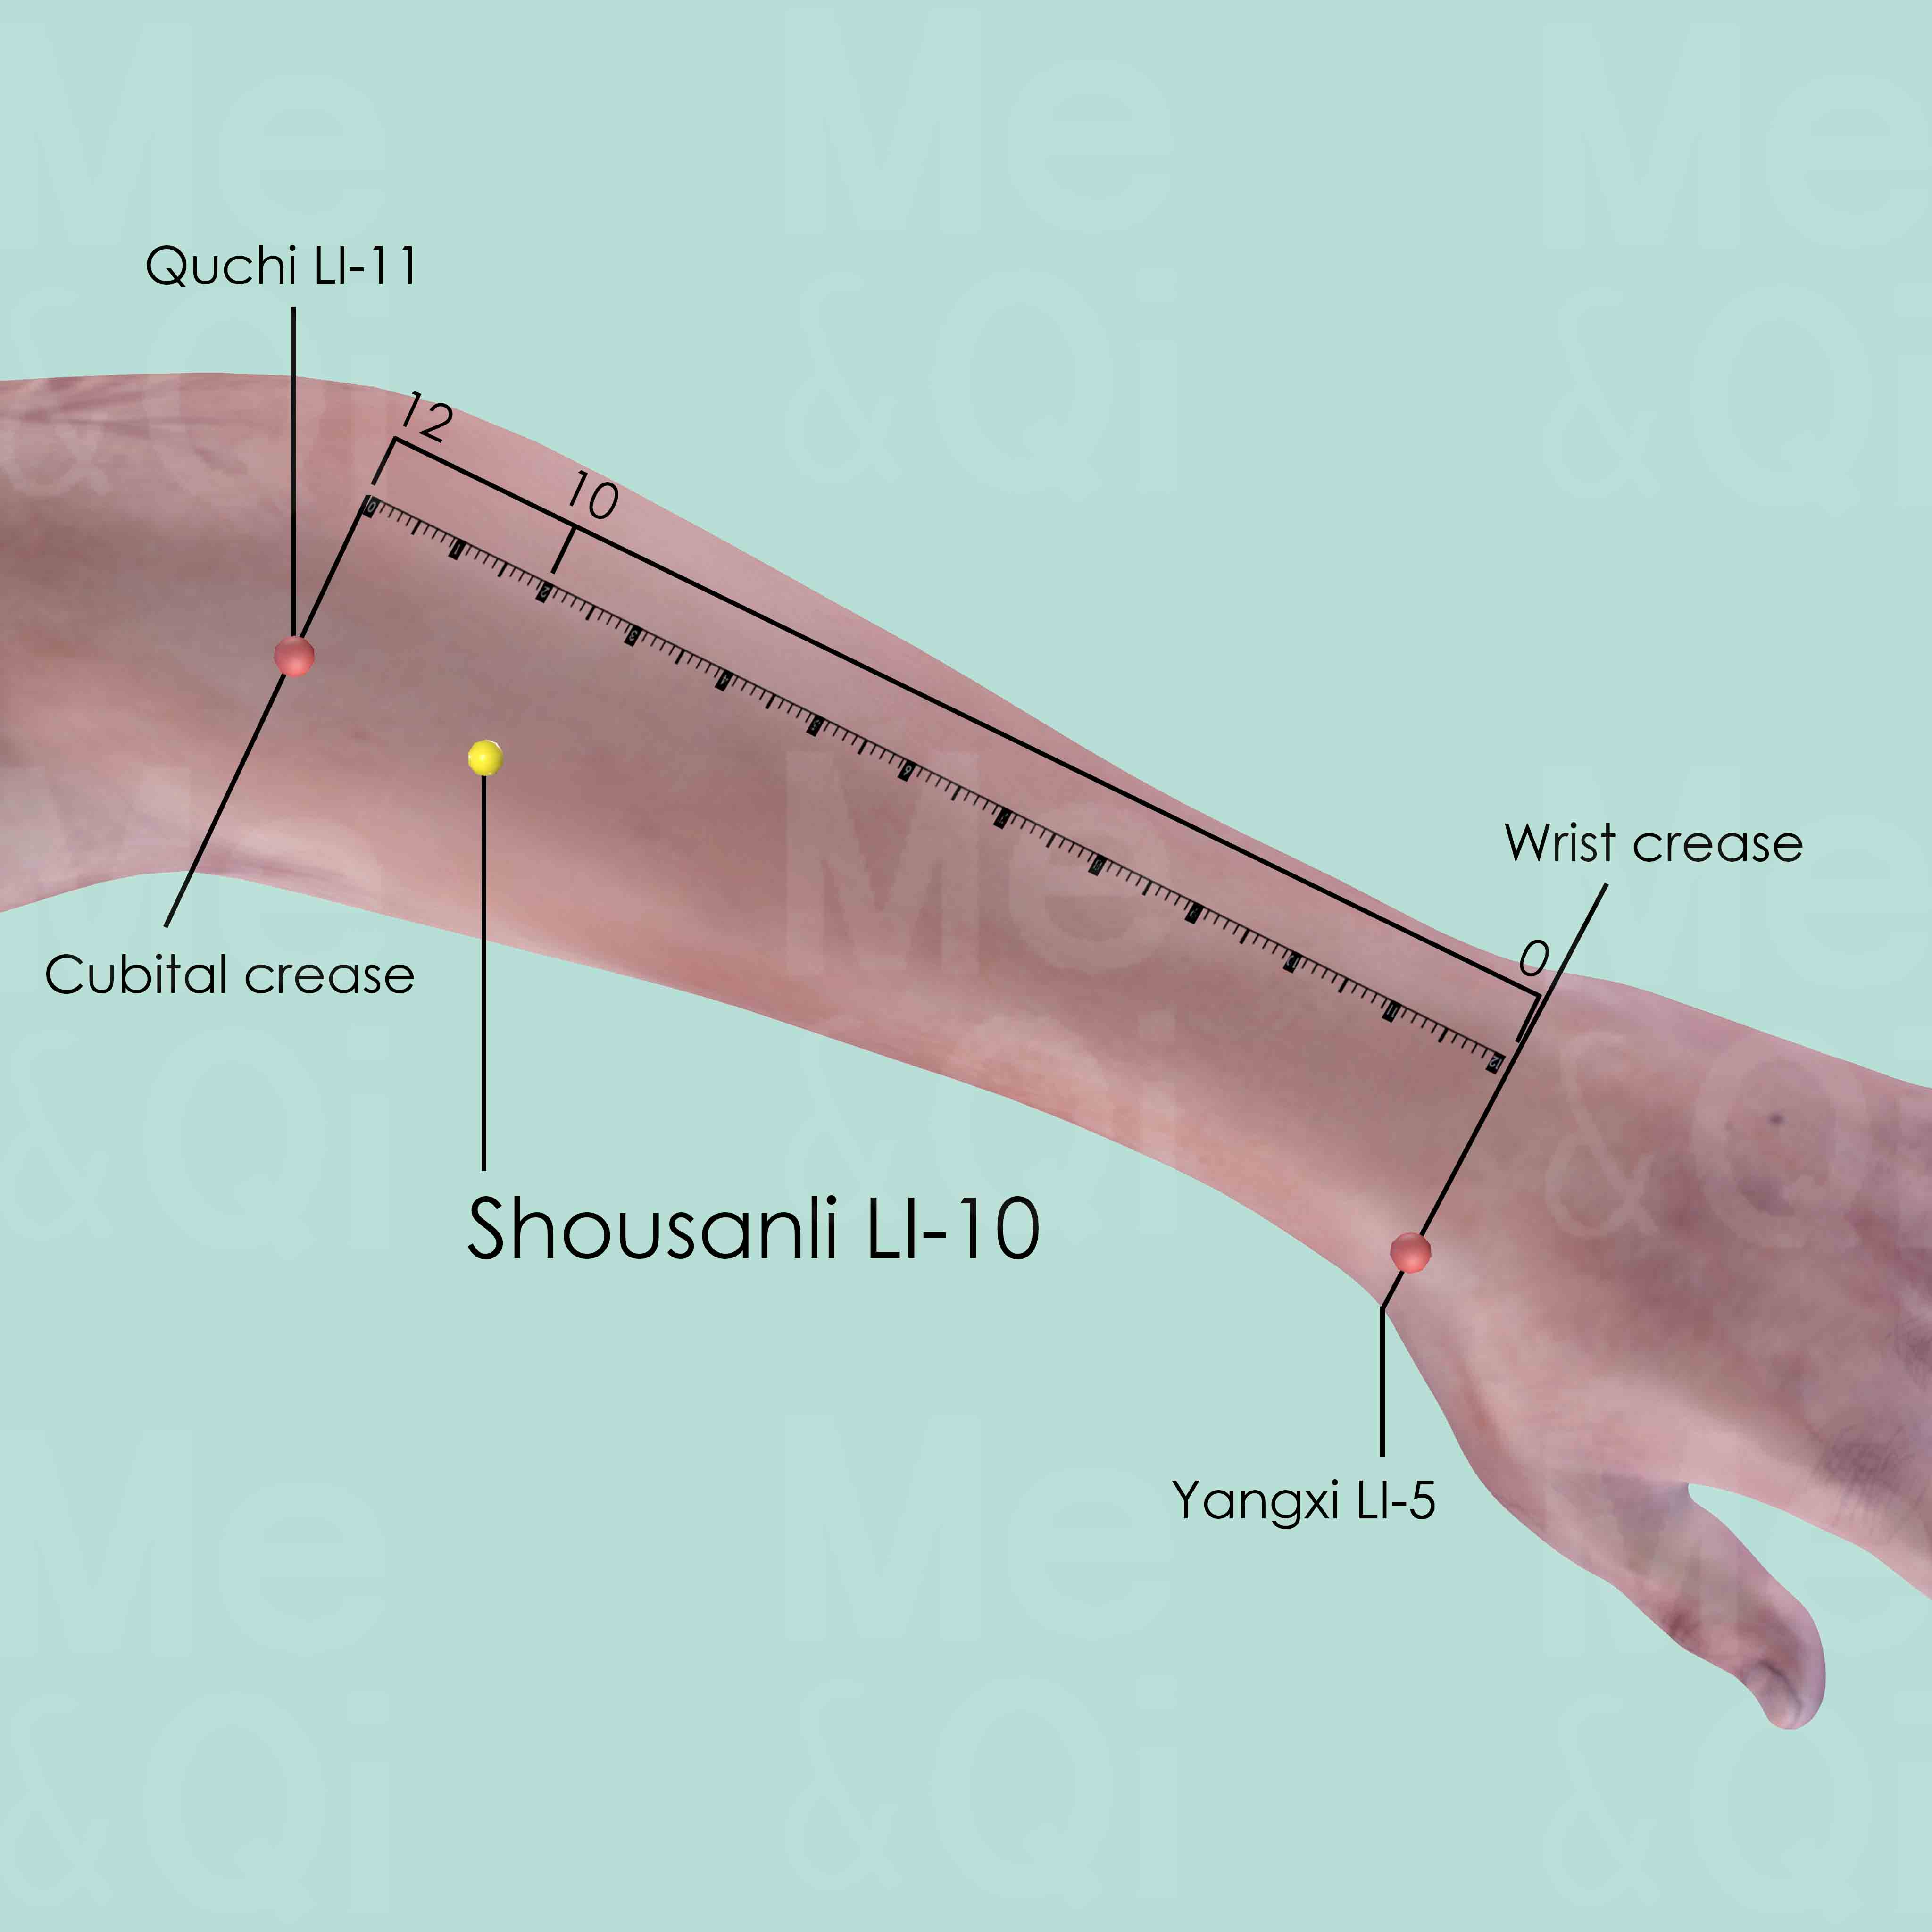 Shousanli LI-10